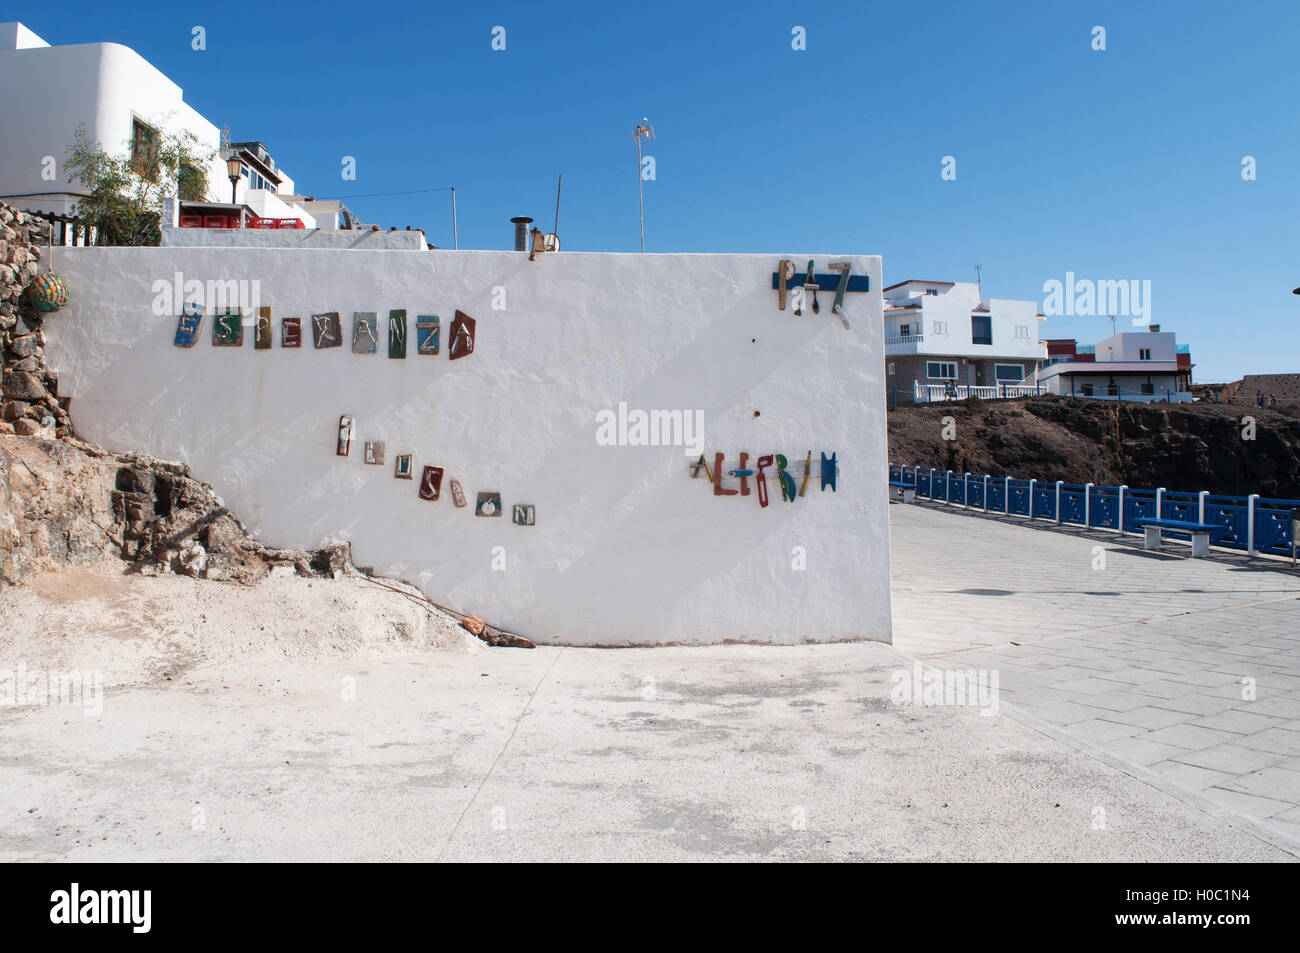 Fuerteventura: die Worte der Hoffnung, Illusion, den Frieden und die Heiterkeit in Spanisch, bestehend aus Stücken von alten Boote auf weiße Wand im Dorf El Cotillo Stockfoto